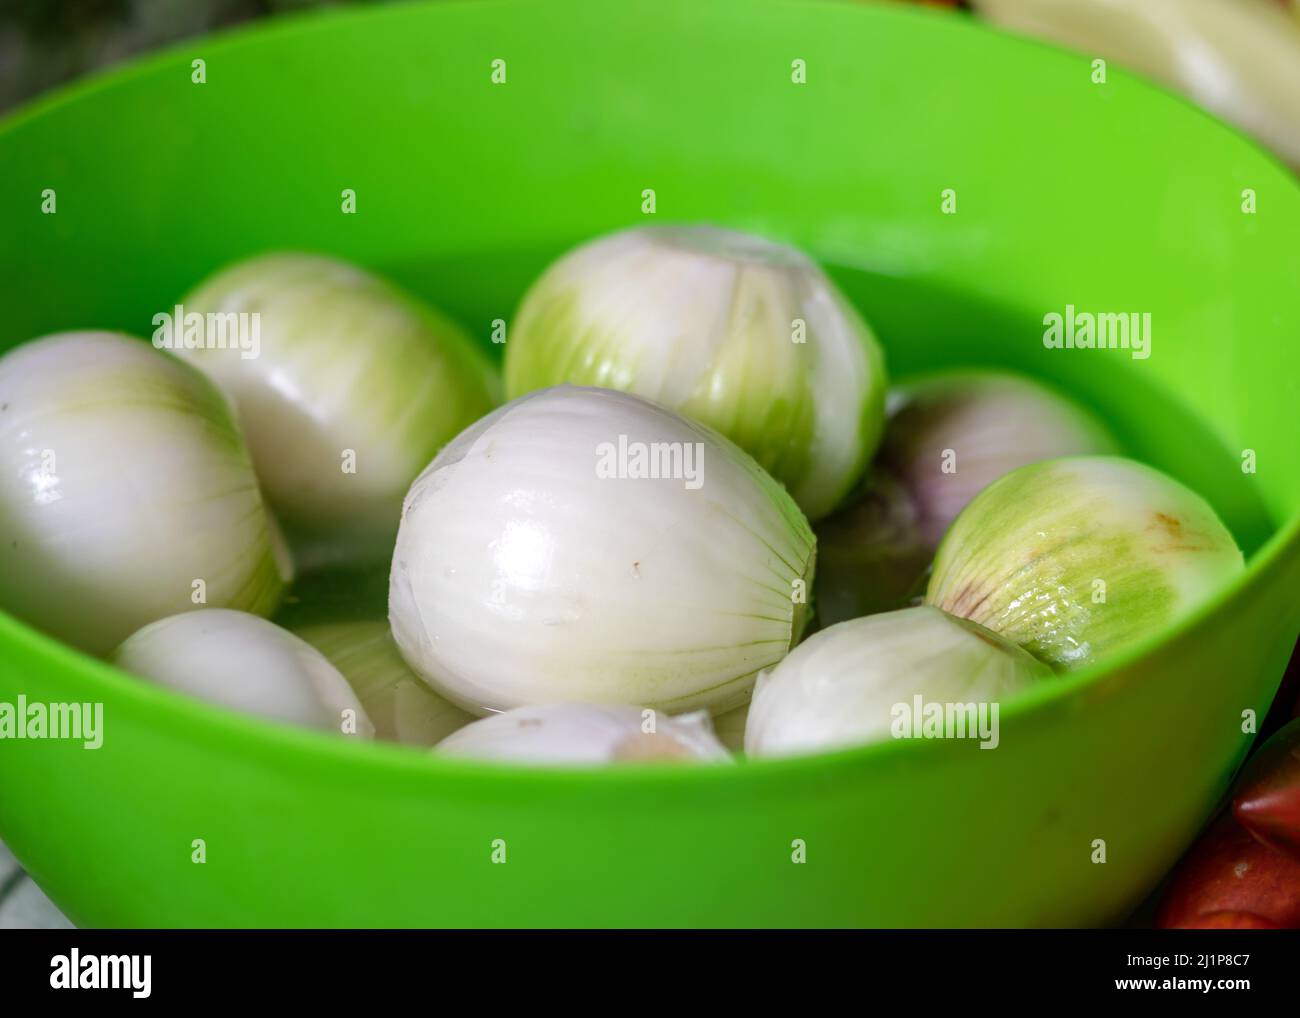 photo en couleur avec oignons pelés dans un bol vert, oignons préparés pour la conservation à la maison, temps de récolte d'automne Banque D'Images